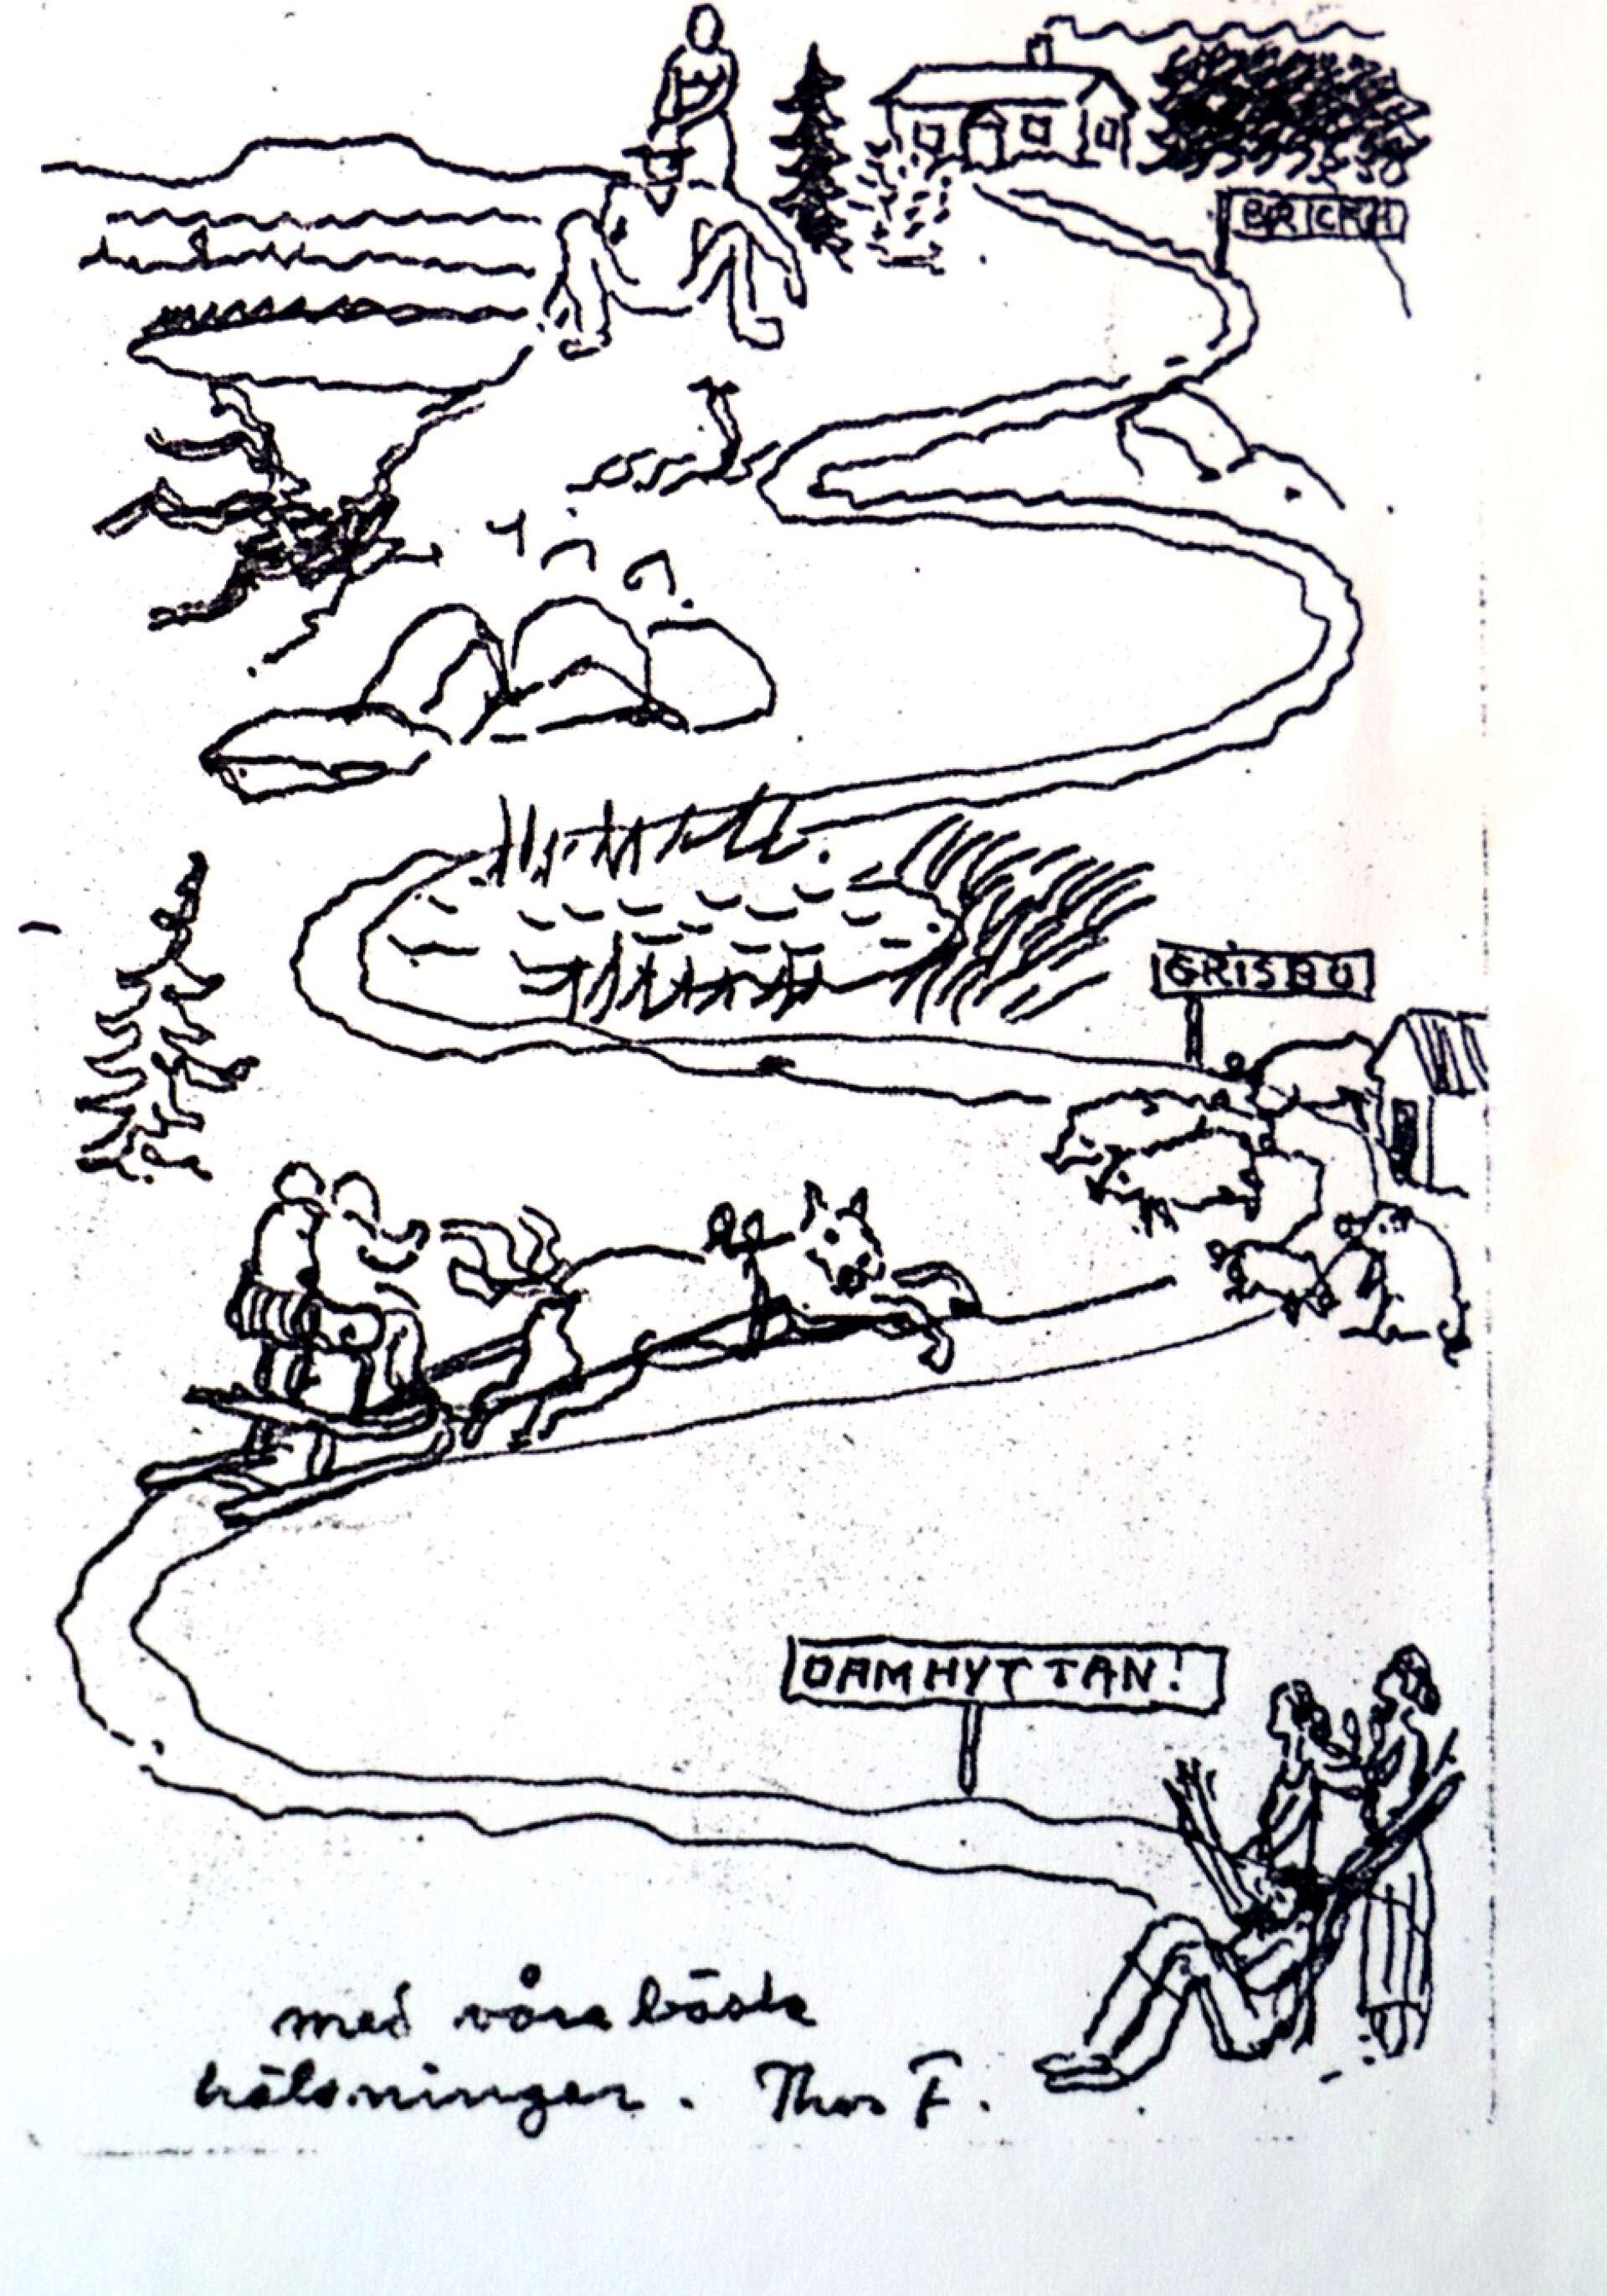 Så här skildrade Thor Fagerkvist livet i byn Dammhyttan i en teckning, som skickades i ett brev till en granne.